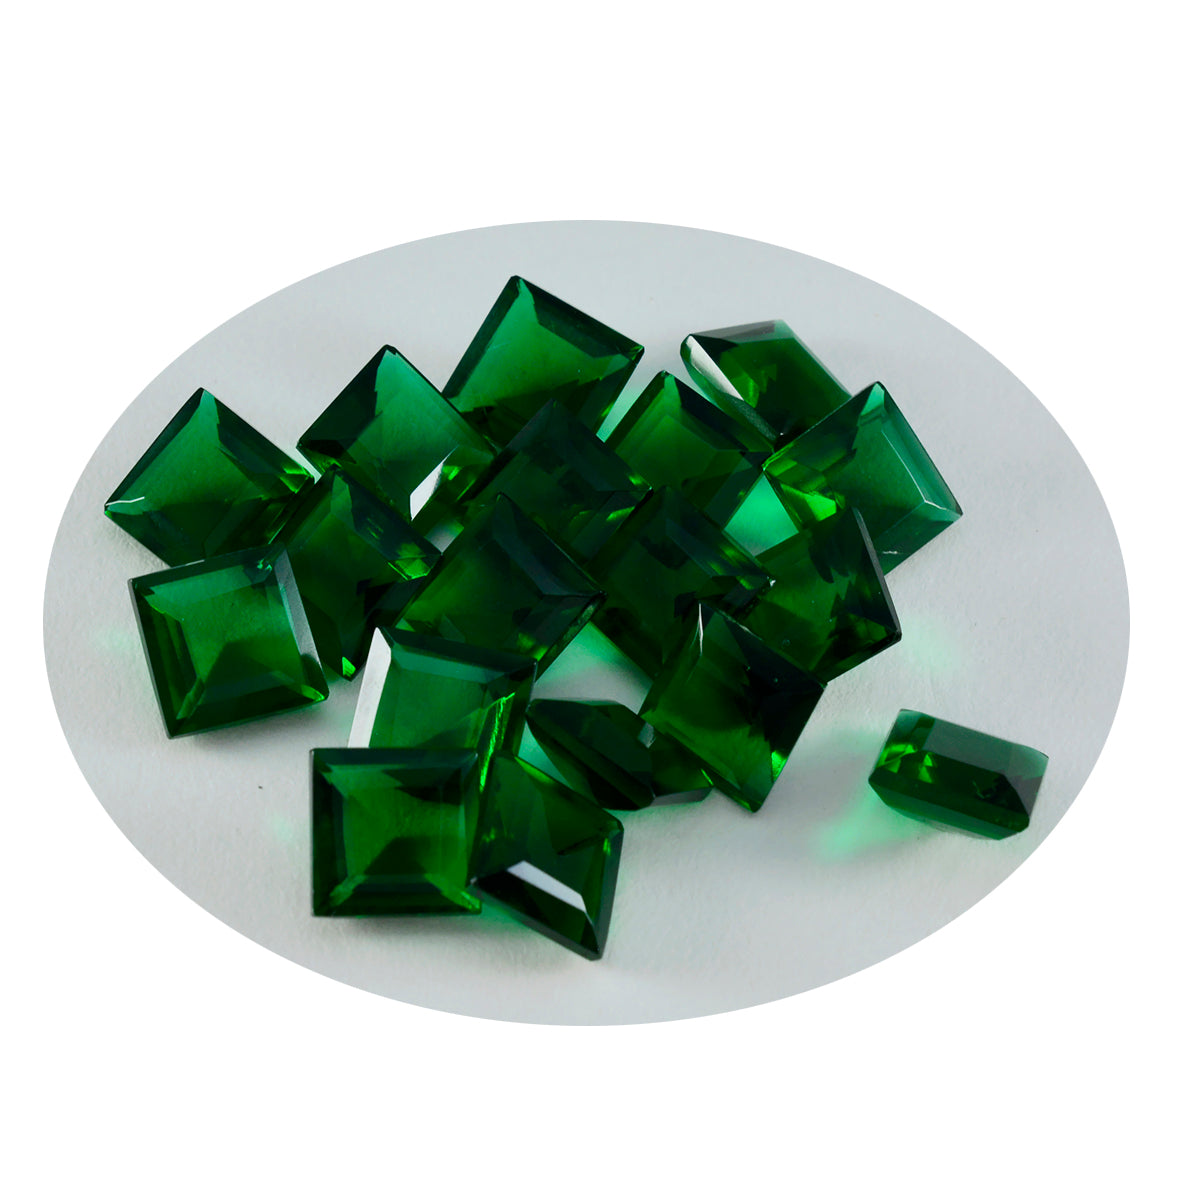 riyogems 1 st grön smaragd cz fasetterad 8x8 mm fyrkantig form vackra kvalitetsädelstenar